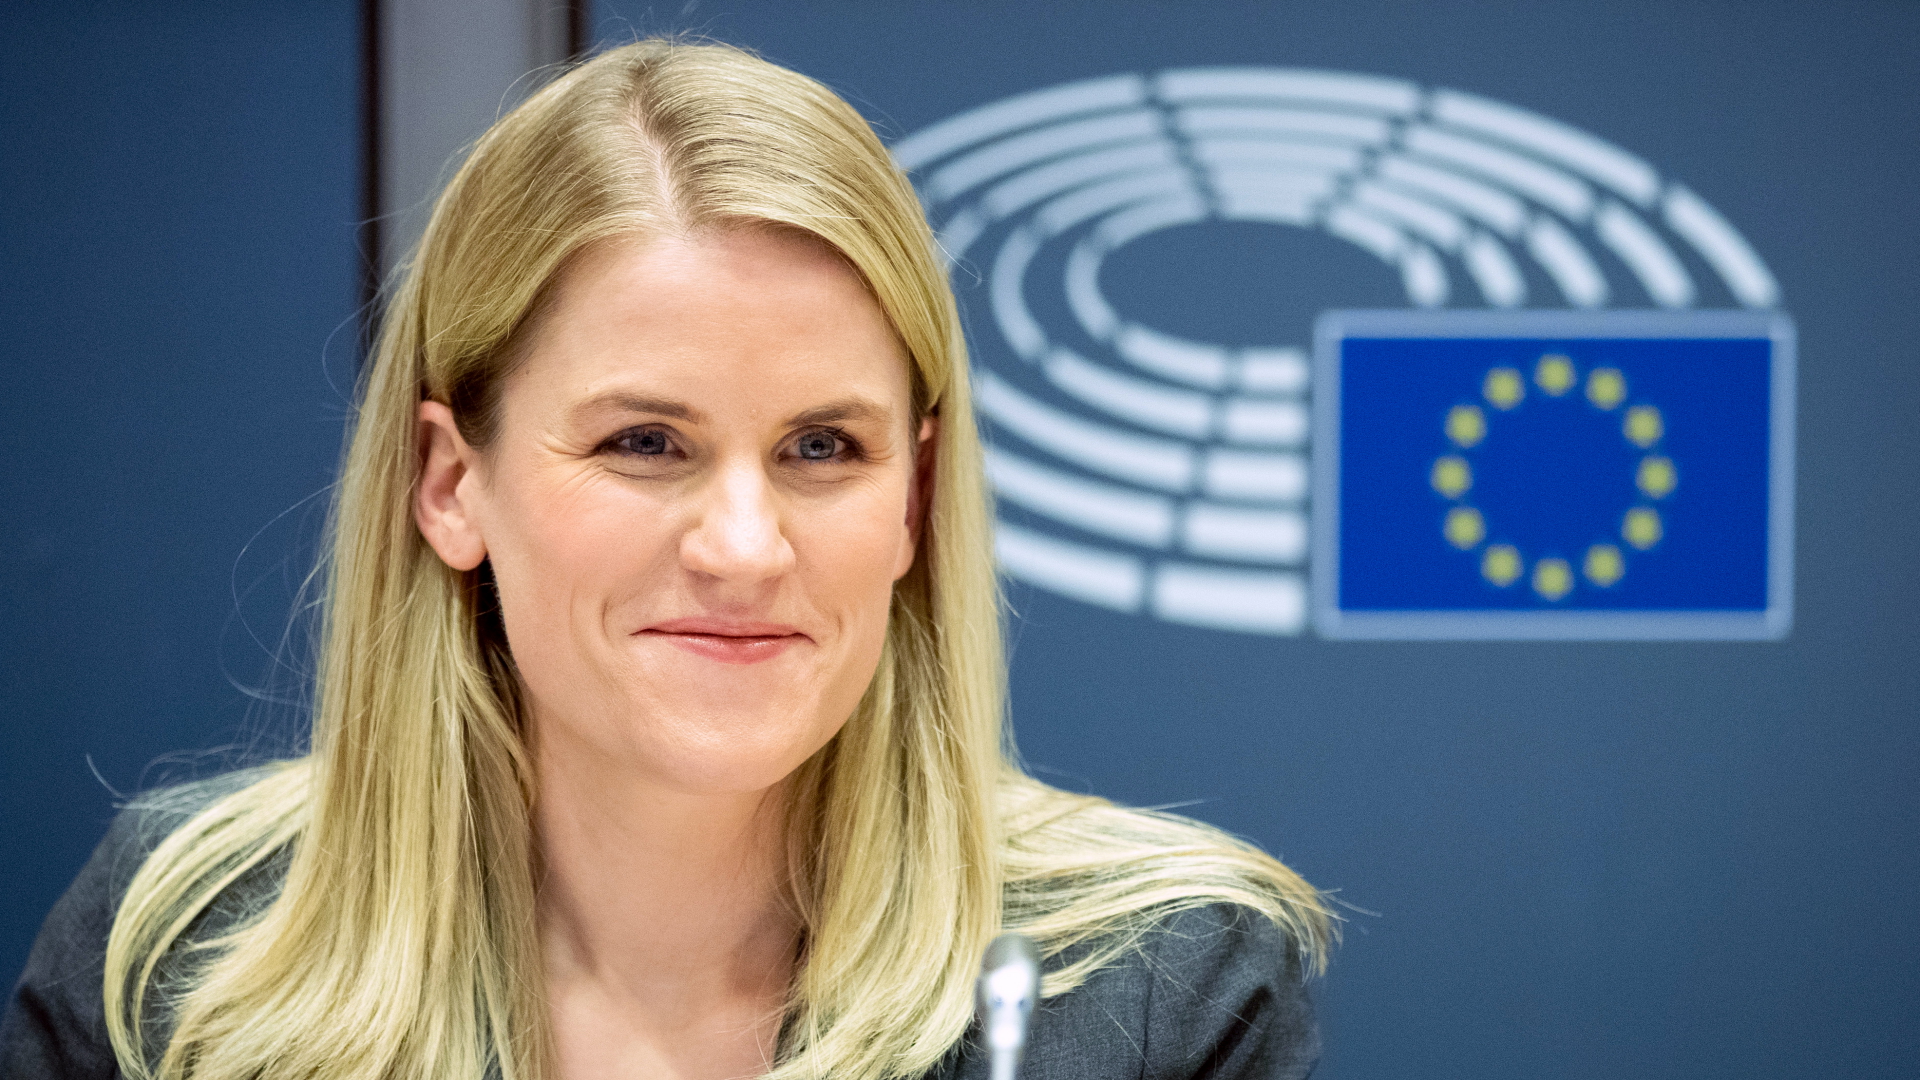  Frances Haugen, Facebook-Whistleblowerin, kommt zu einer Anhörung des Ausschusses für Binnenmarkt und Verbraucherschutz des Europäischen Parlaments. | dpa